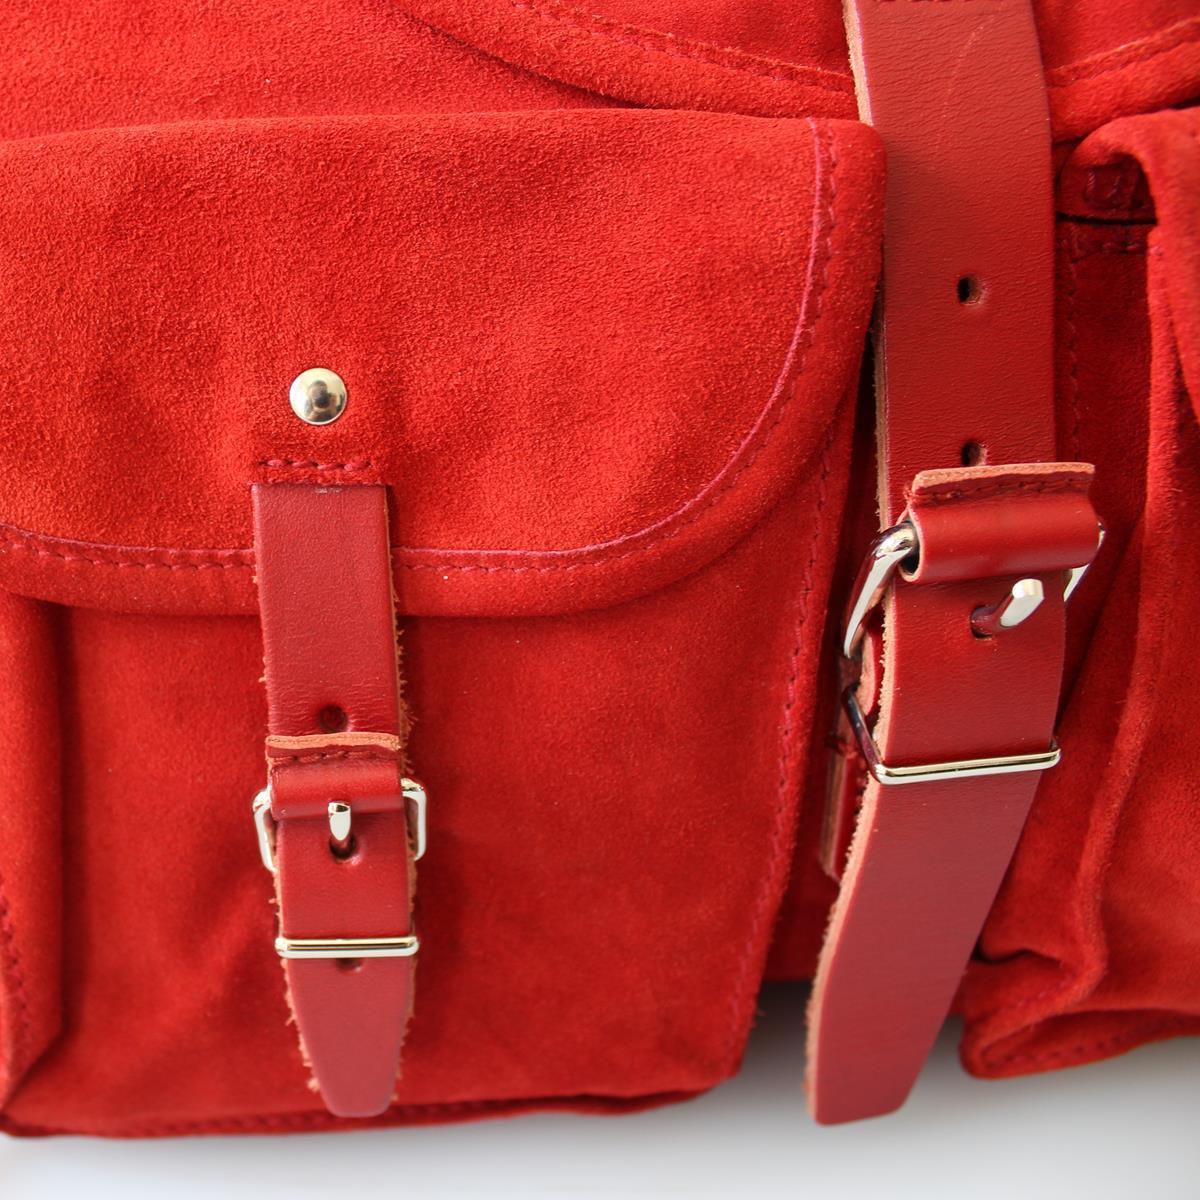 red suede handbag